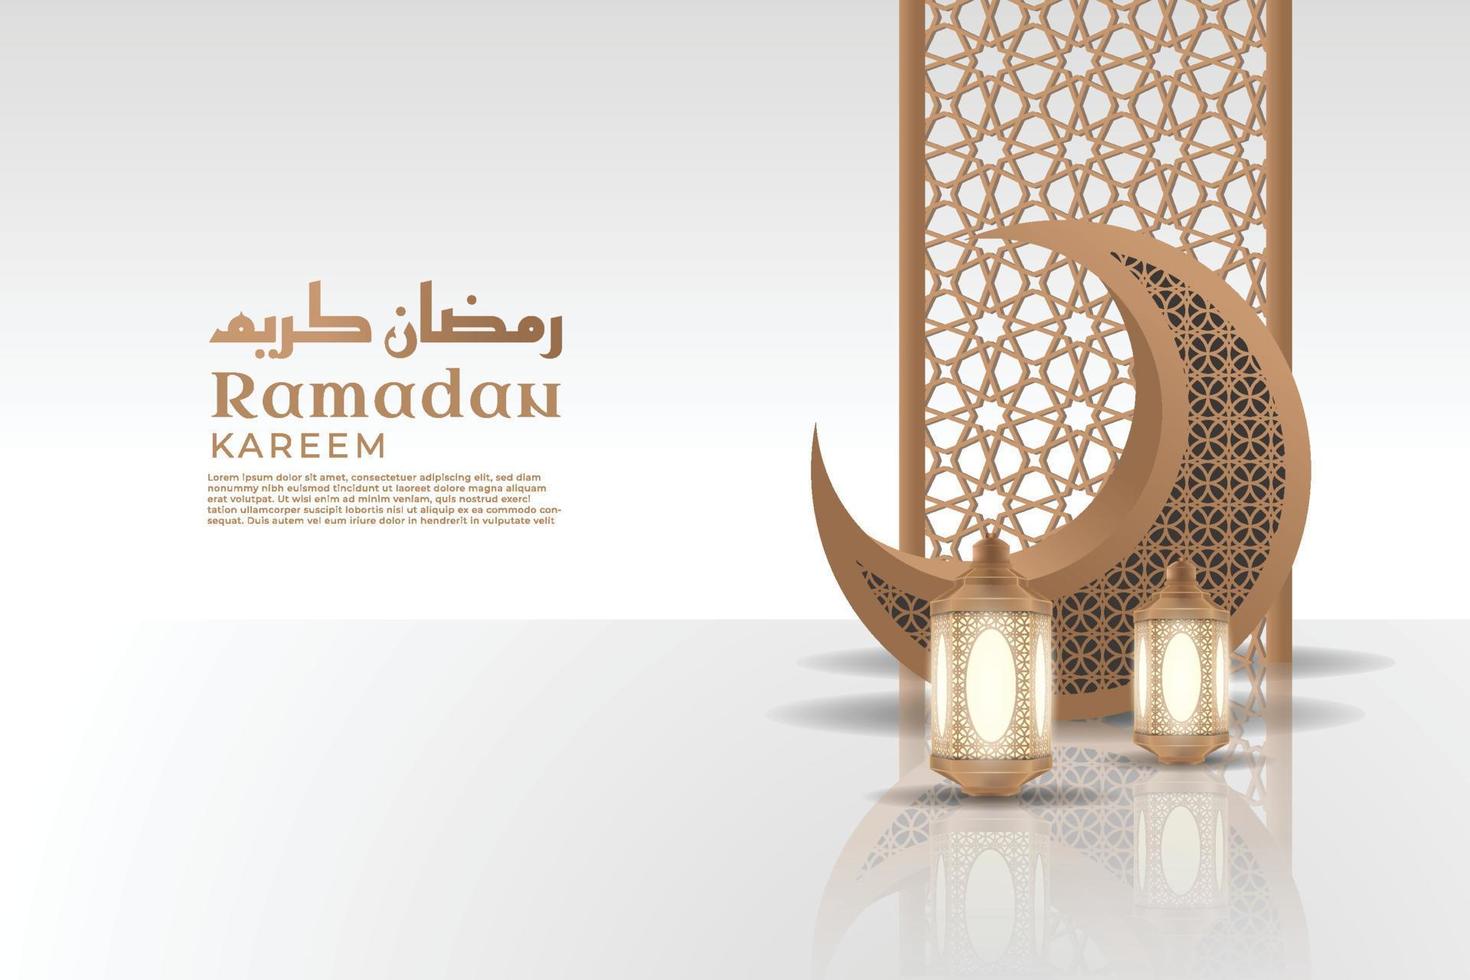 fond de kareem ramadan islamique réaliste avec lune et ornement de lanterne vecteur premium